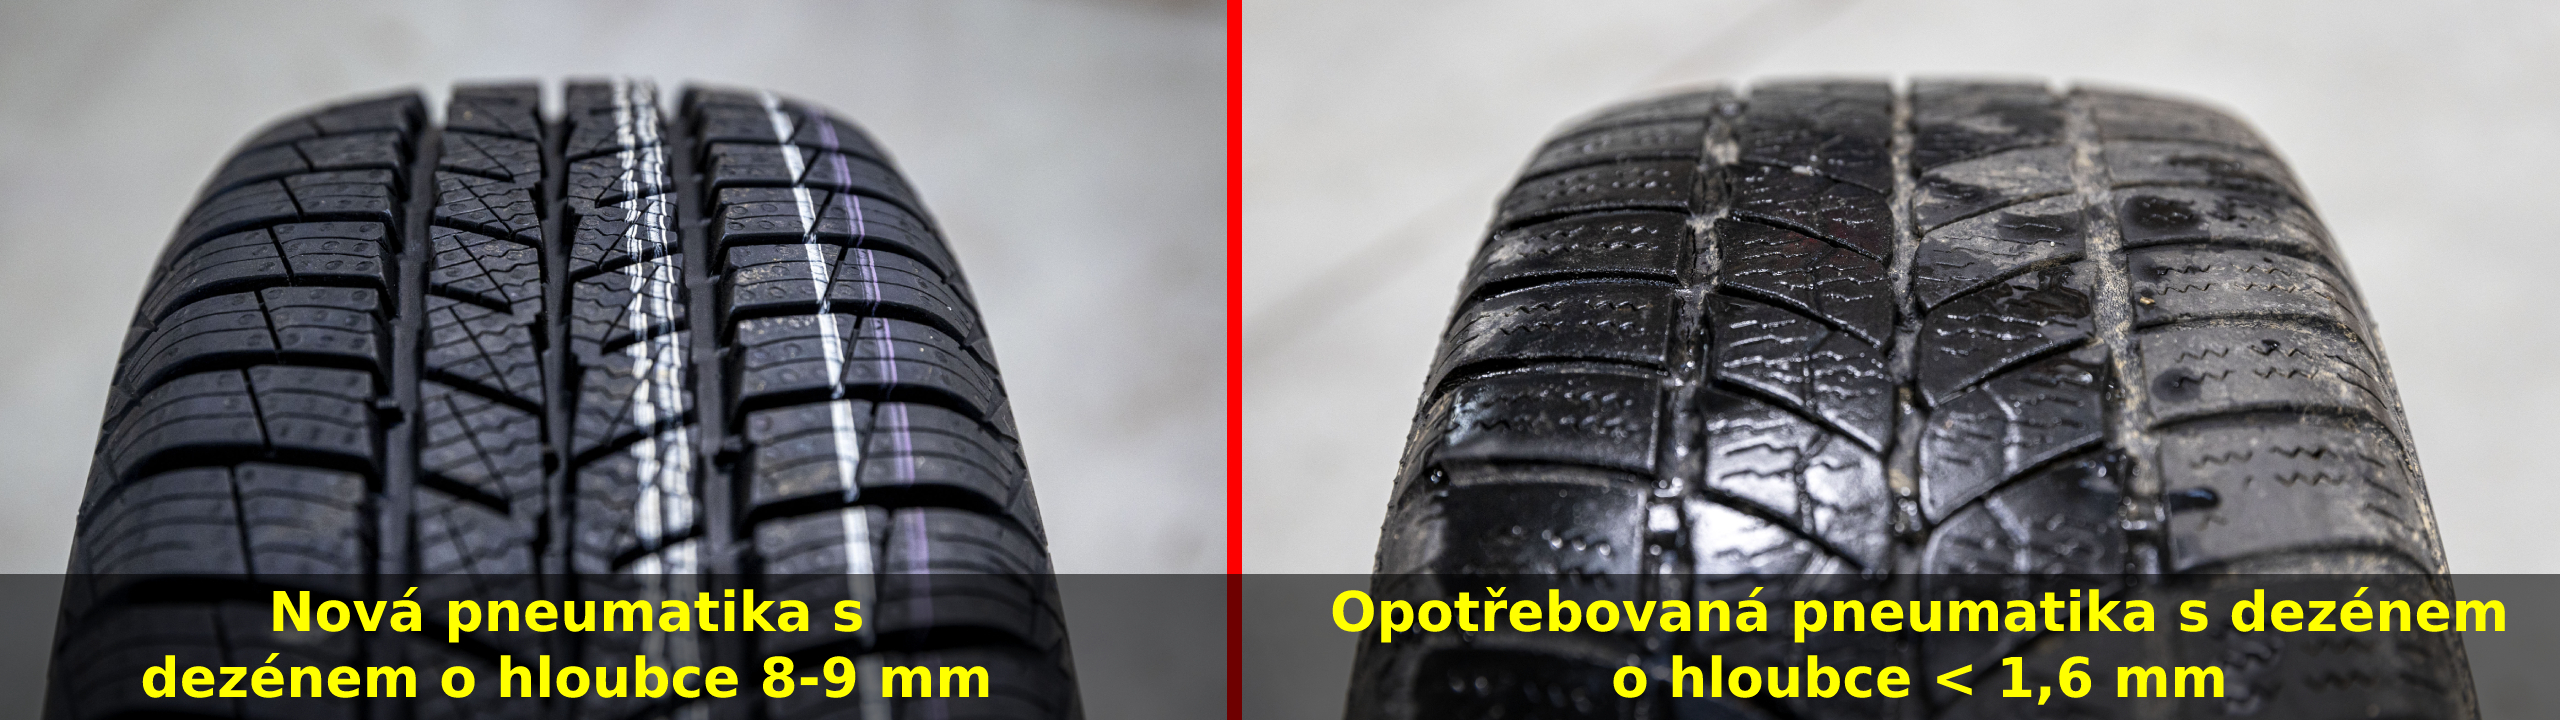 Porovnání nové a ojeté pneumatiky